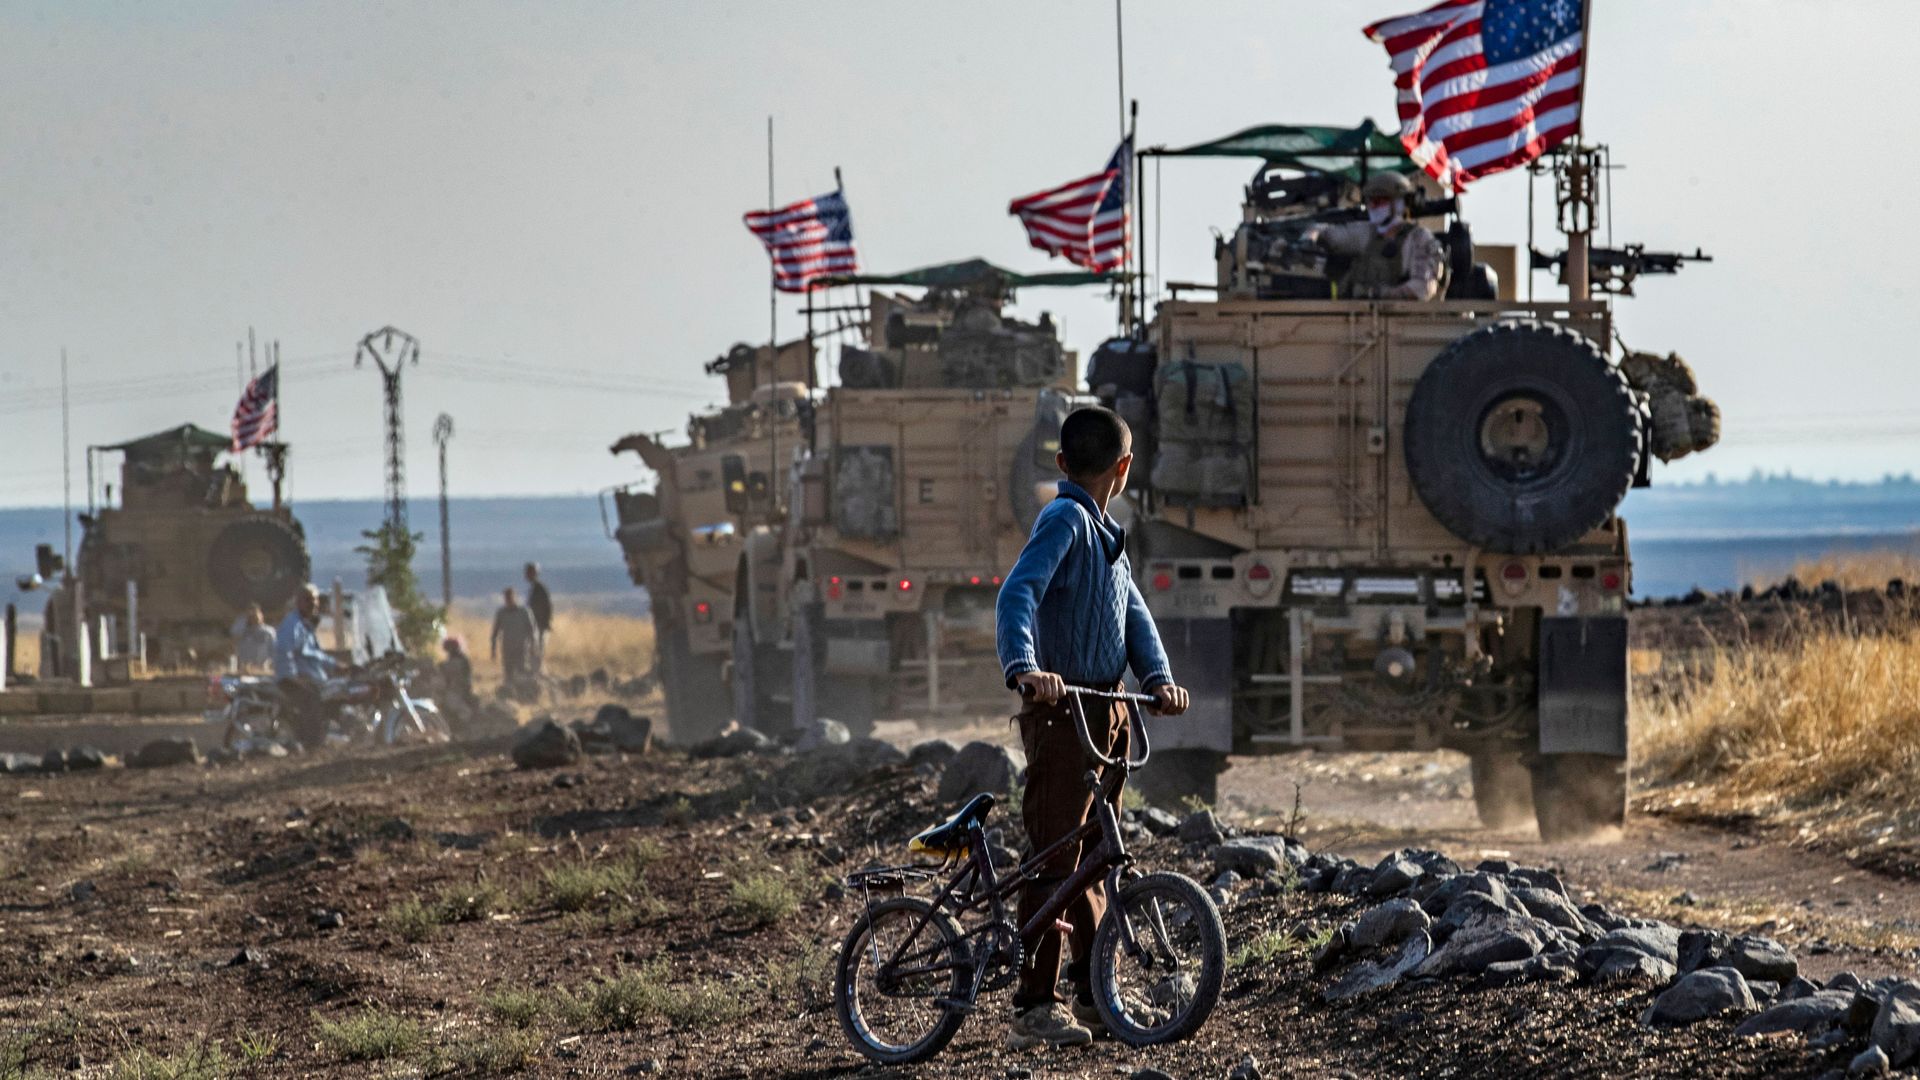 A boy watches a U.S. convoy on patrol in Syria